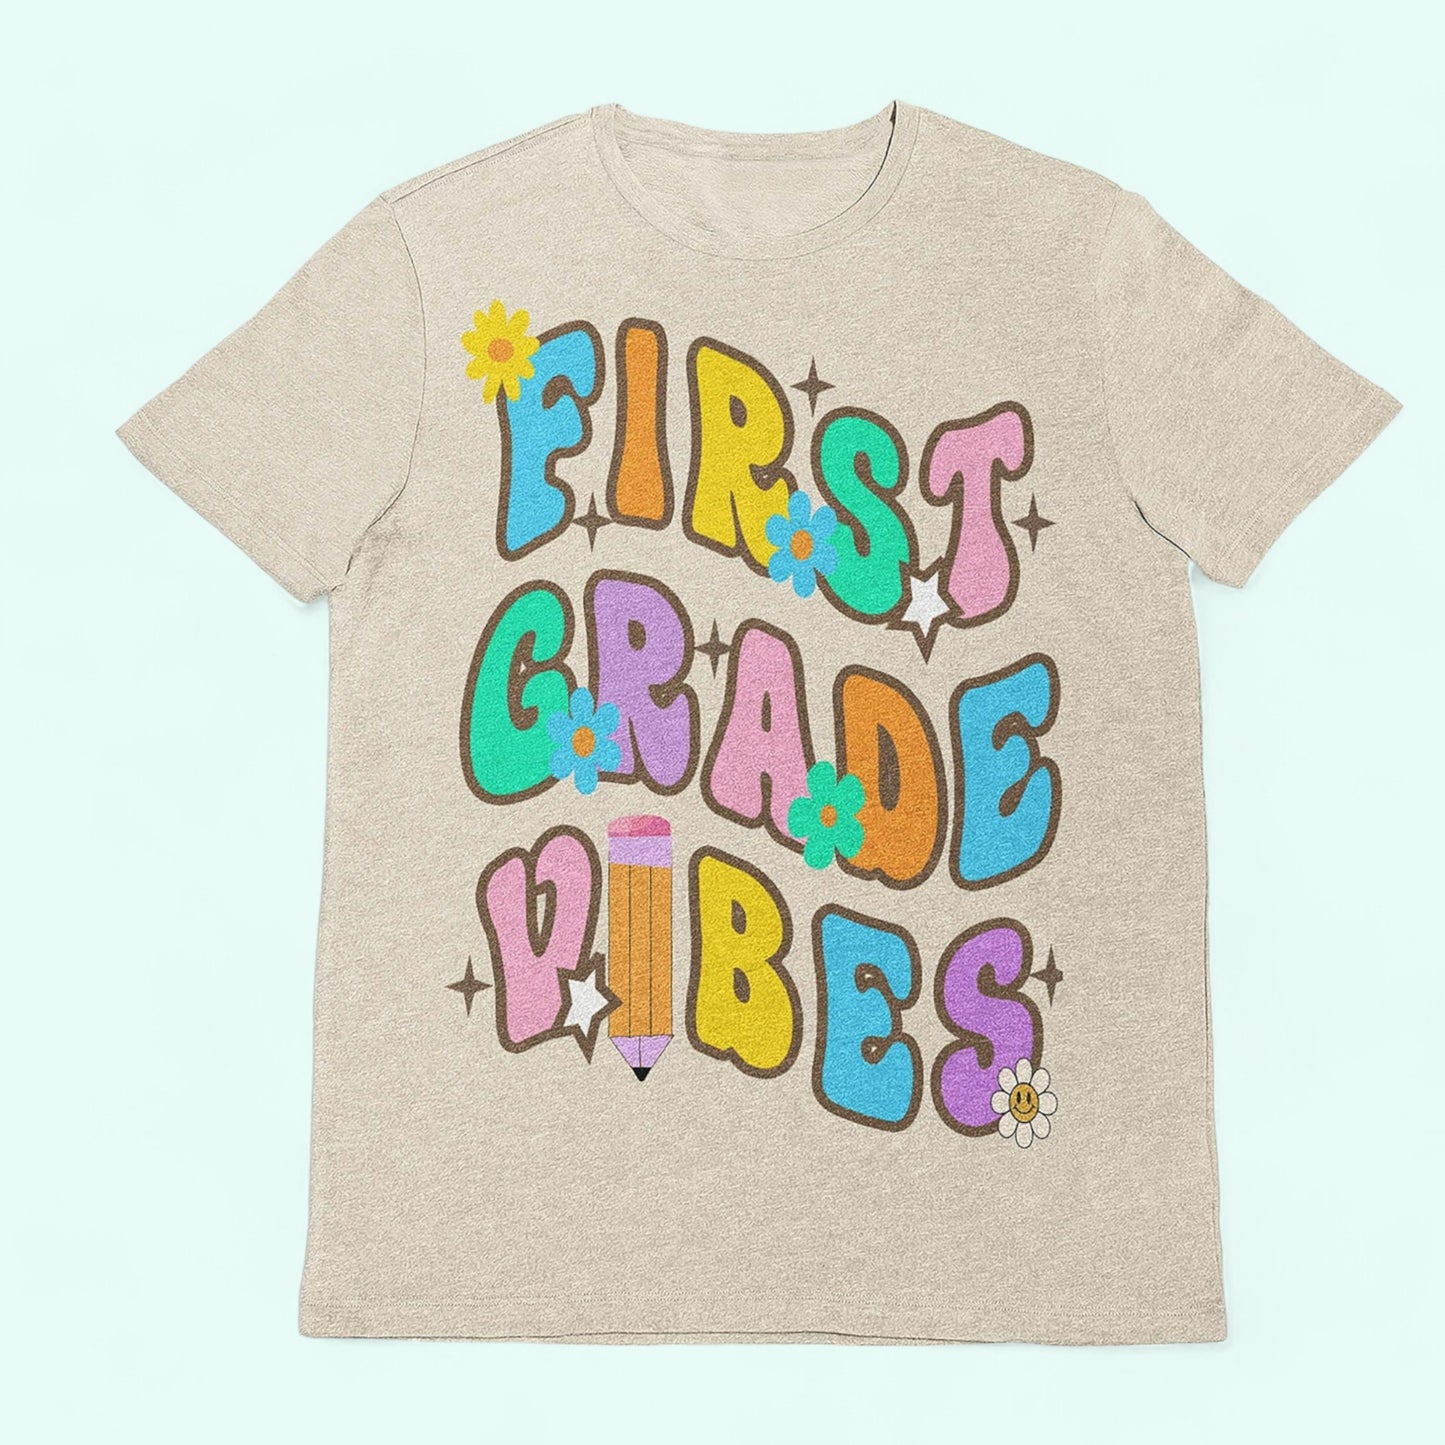 First grade shirt